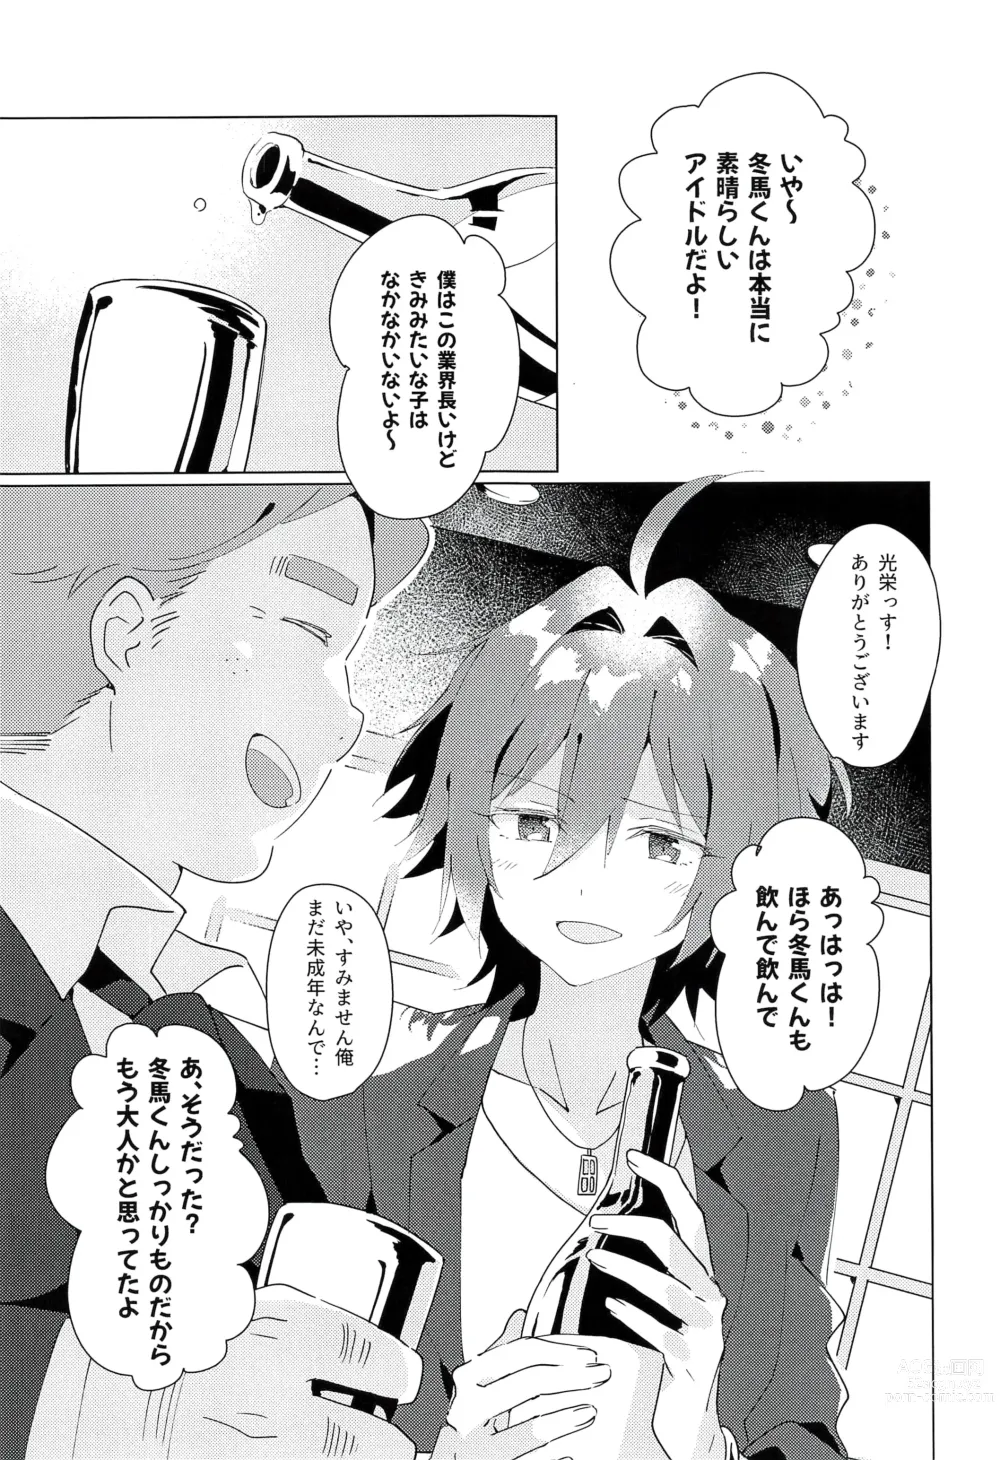 Page 5 of doujinshi naive.